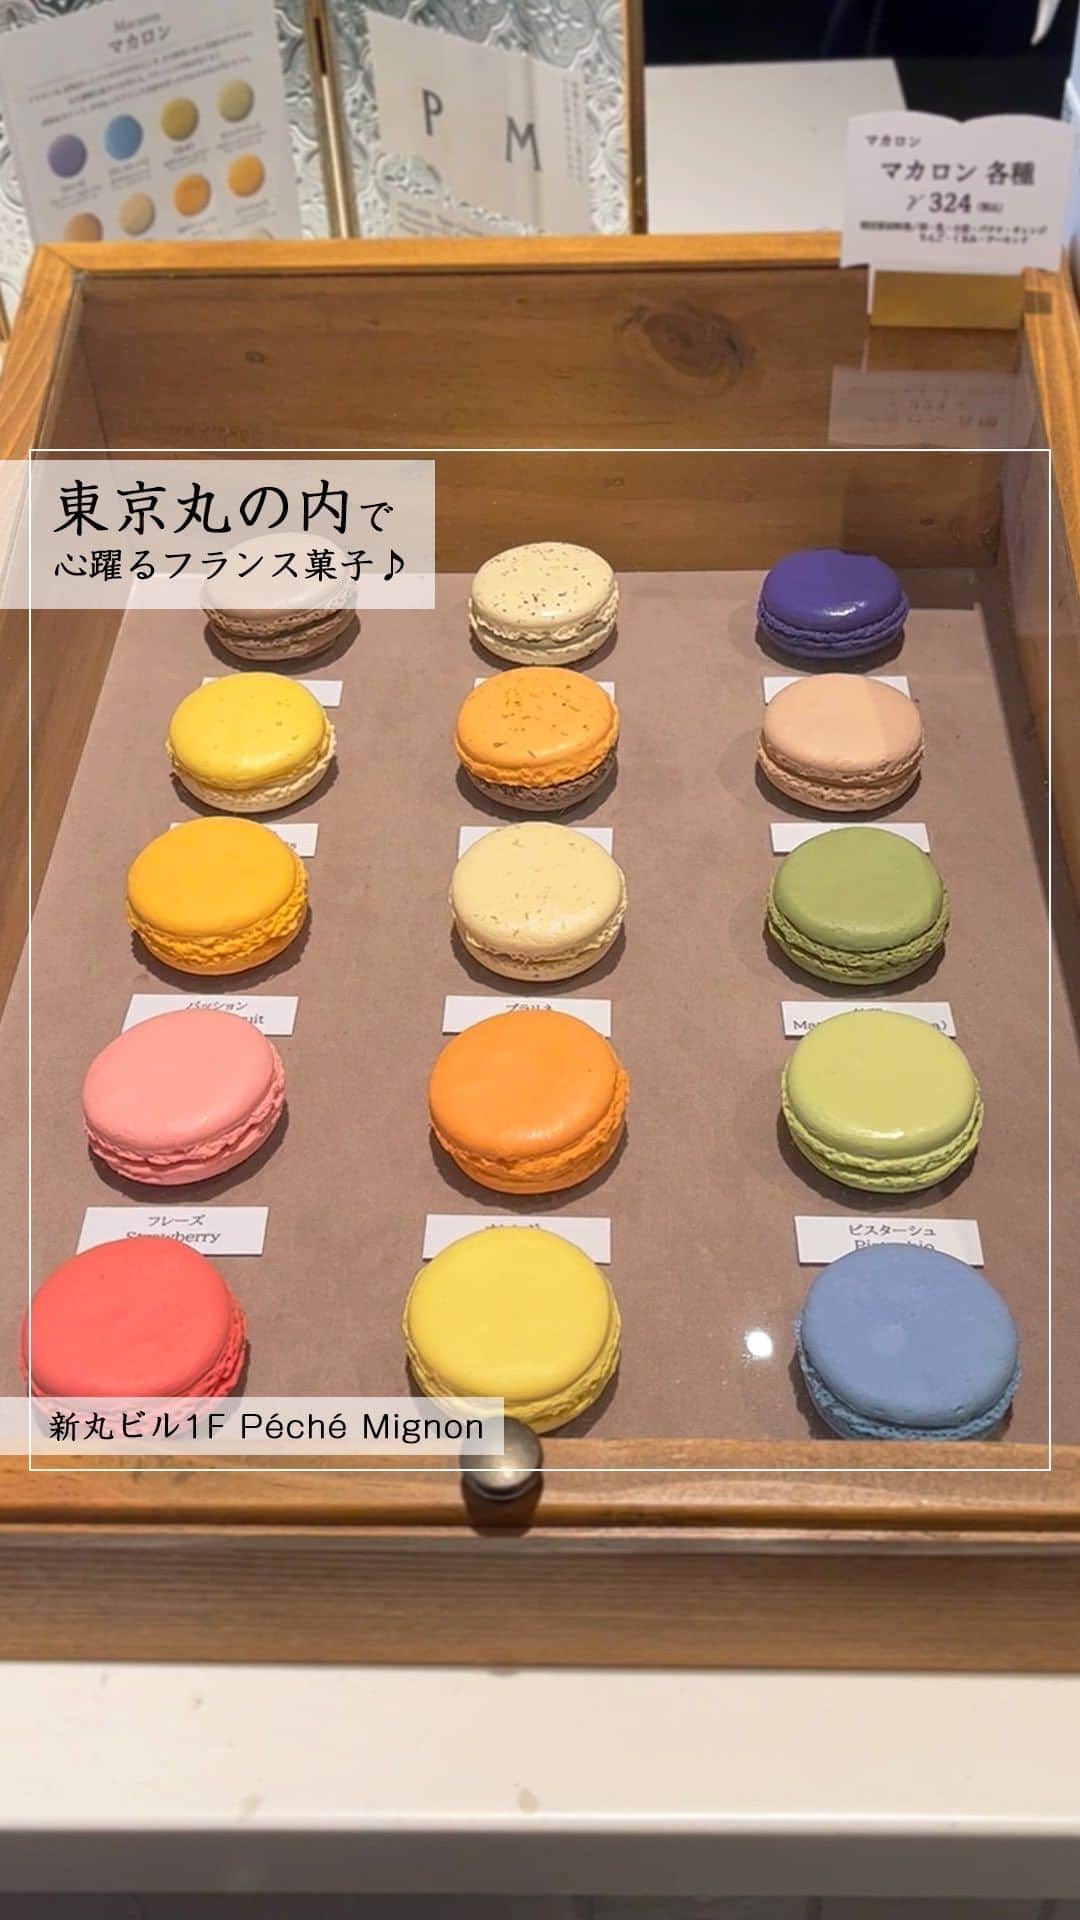 Marunouchi Paperのインスタグラム：「【New Open！全50種のフランス焼菓子がラインアップ】 北海道・函館で長年愛されてきたフランス菓子の名店「Péché Mignon」が新丸ビル1Fにオープン！ 北海道以外の店舗は丸の内だけ。熟練の職人が一つ一つ手作りした焼菓子を、東京にいながら堪能できます。  ショーケースには焼菓子をメインに、サブレやフィナンシェ、カラフルなマカロン、ダックワーズなど全50種類をラインナップ。 中には、ごまサブレやオニオンパイなど塩味を効かせた種類も並びます。  上部が開放されたショーケースには見ているだけで心が踊る多彩な焼菓子がずらり。 実際に手に取って選べる楽しさも魅力的です。 1点から購入が可能なので、まずは気になるものを試してみて。  ギフトには、白を基調としたブック型のボックスをサイズ別にご用意。贈る相手やシーン、予算に合わせてお好きな商品を詰め合わせることができます。  また、店内にはカフェスペースが14席設けられ、お好きな焼菓子とドリンクのセットが楽しめます。 自家焙煎コーヒーやオリジナルのハーブティーをはじめ、シャンパンとのペアリングセットも。 動画では2種のフールセックとドリンクのセットを注文し、ダックワーズ、フランボワーズクリームサンドにアプリコットティーを合わせました。 オリジナルブレンドの紅茶は店内で販売もしています。  小麦粉を使わずにアーモンドパウダーとメレンゲで仕上げたダックワーズは、ふわふわ＆しっとり食感と豊かな味わいが魅力。 1番人気の商品で全8種類が揃います。中でも抹茶味の“テヴェール”は海外の方からの人気も高く、“ピスターシュ”や“フランボワーズ”もおすすめです。  フランス語で“小さな罪”を意味する「Péché Mignon」。 “甘いもの好き”という意味も持ち合わせており、ついつい食べてしまう罪作りな焼菓子の美味しさやサービスで、人々の心を動かし幸せな時間を届けることを目指します。  店内には“小さな罪”をコンセプトとした色々な仕掛けを散りばめたそう。 クスッと笑えるユーモラスな仕掛けは、ぜひお店でスタッフに聞いてみてください。  ———————————————— Péché Mignon【フランス菓子店】新丸ビル1F TEL：03-6665-7882  Set avec boissons（ドリンク付セット） 2種のフールセック 税込1,100円～税込1,200円 2種のマカロン 税込1,100円～税込1,200円 ピスターシュ チーズタルト 税込1,320円～1,420円 ※ドリンクの種類によって価格が変わります ※ピスターシュ チーズタルトは単品 税込660円もございます。 ————————————————  #marunouchi_paper #marunouchi #tokyo #マルノウチペーパー #丸の内 #東京駅 #丸の内スイーツ #pechemignon #ペシェミニヨン #ペシェミニョン #フランス菓子 #フランス焼き菓子 #焼き菓子屋 #焼き菓子屋さん #函館スイーツ #ダックワーズ #焼き菓子セット #カフェスペース #イートインできます #ギフトボックス #贈り物に最適 #手土産にオススメ #焼き菓子ギフト #丸の内カフェ #新丸ビルカフェ #新丸ビル」